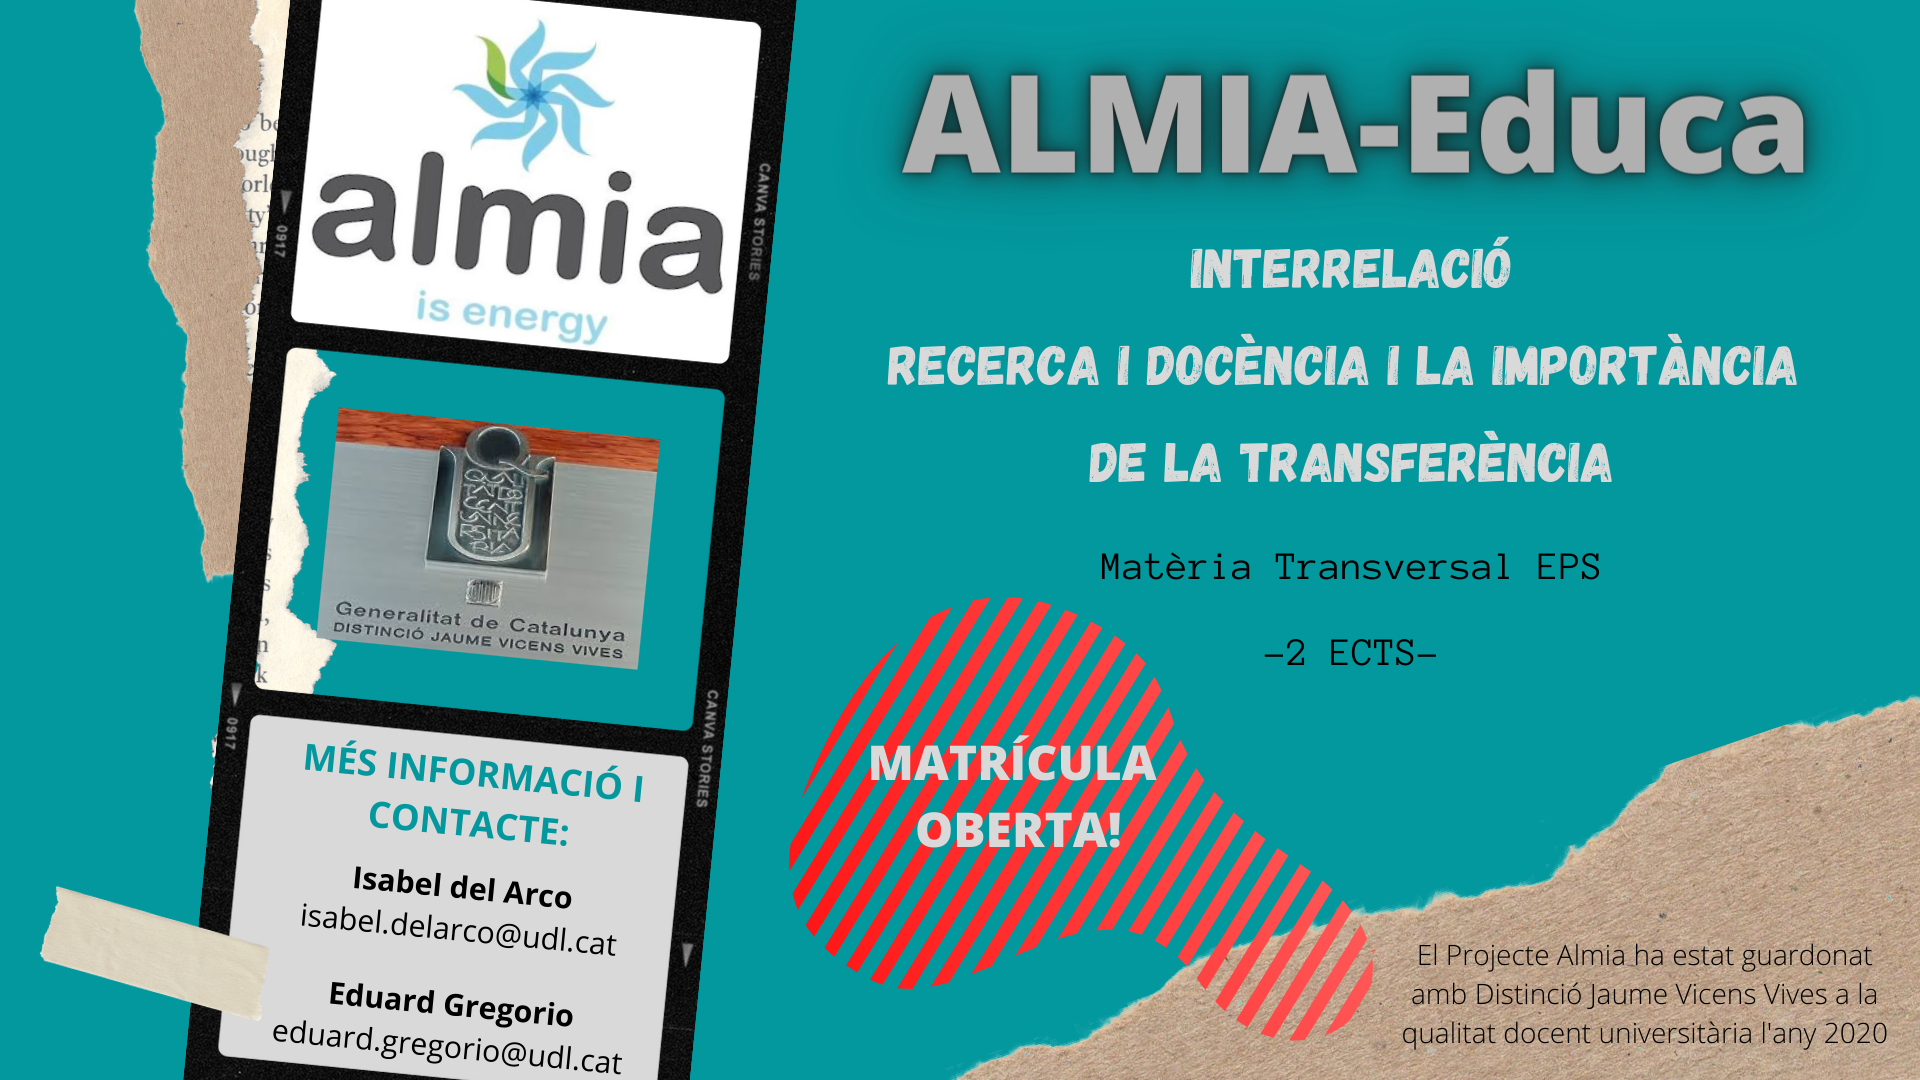 ALMIA-Educa Interrelació recerca i docència i la importància de la transferència